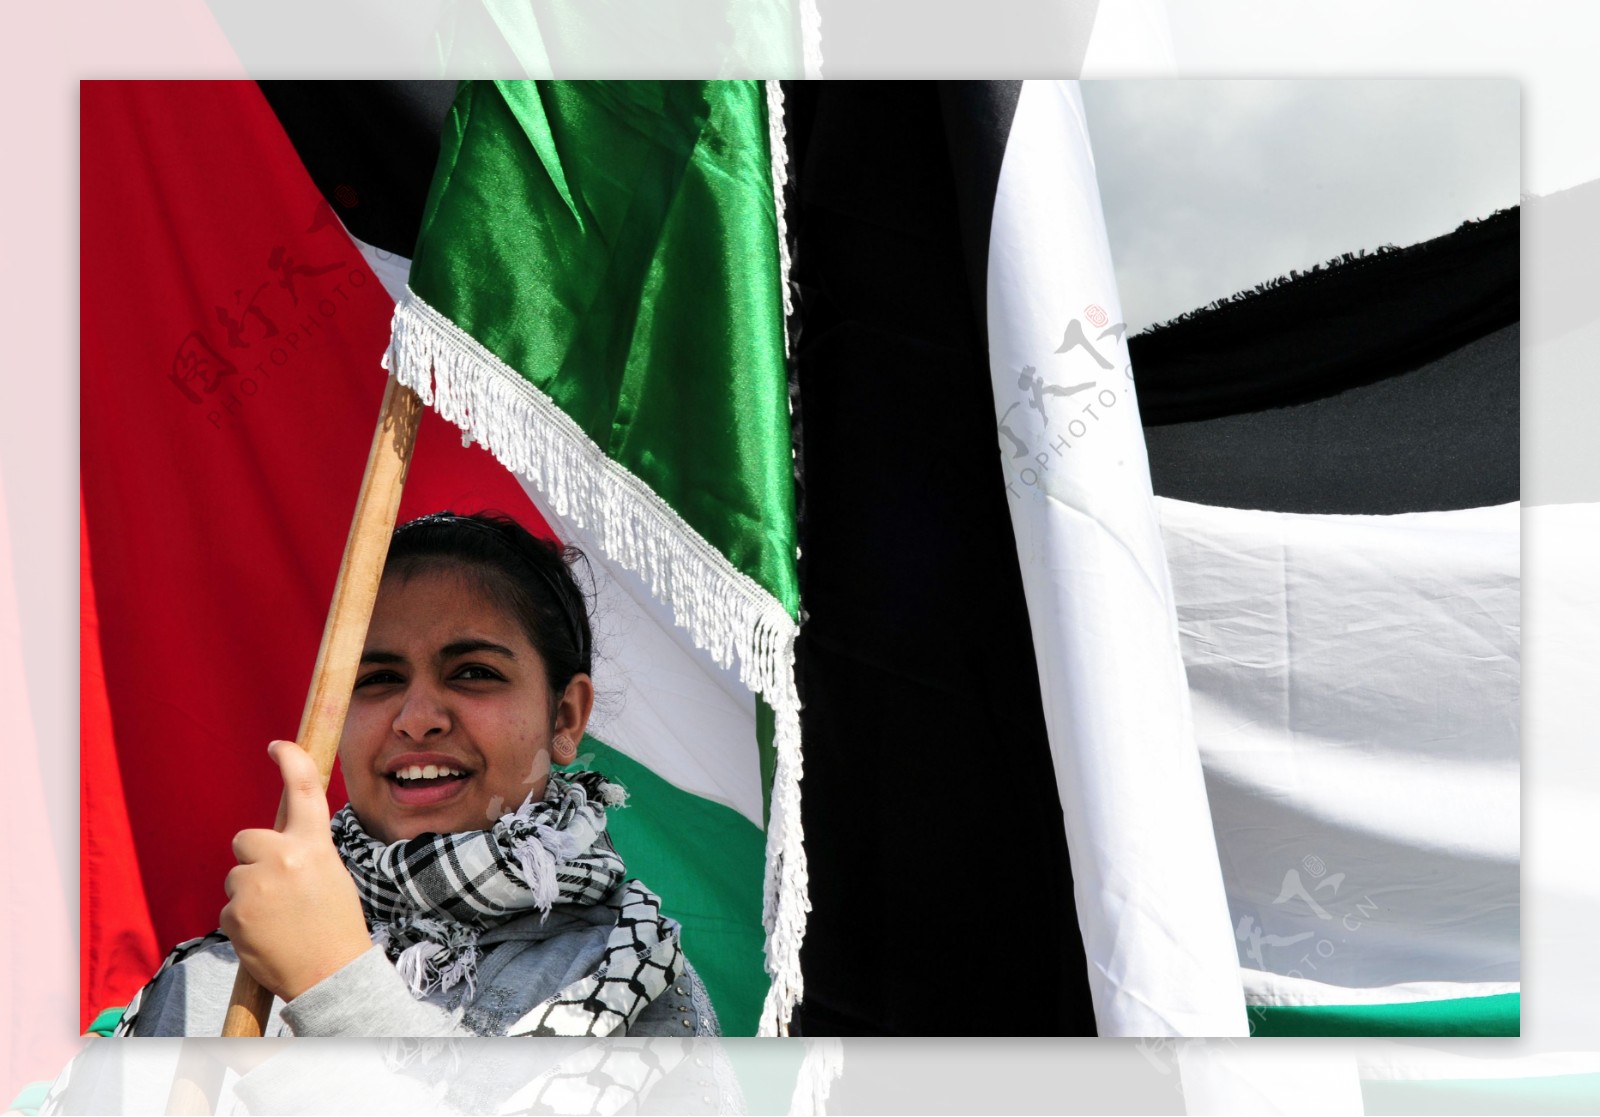 举着阿拉伯国旗的女人图片